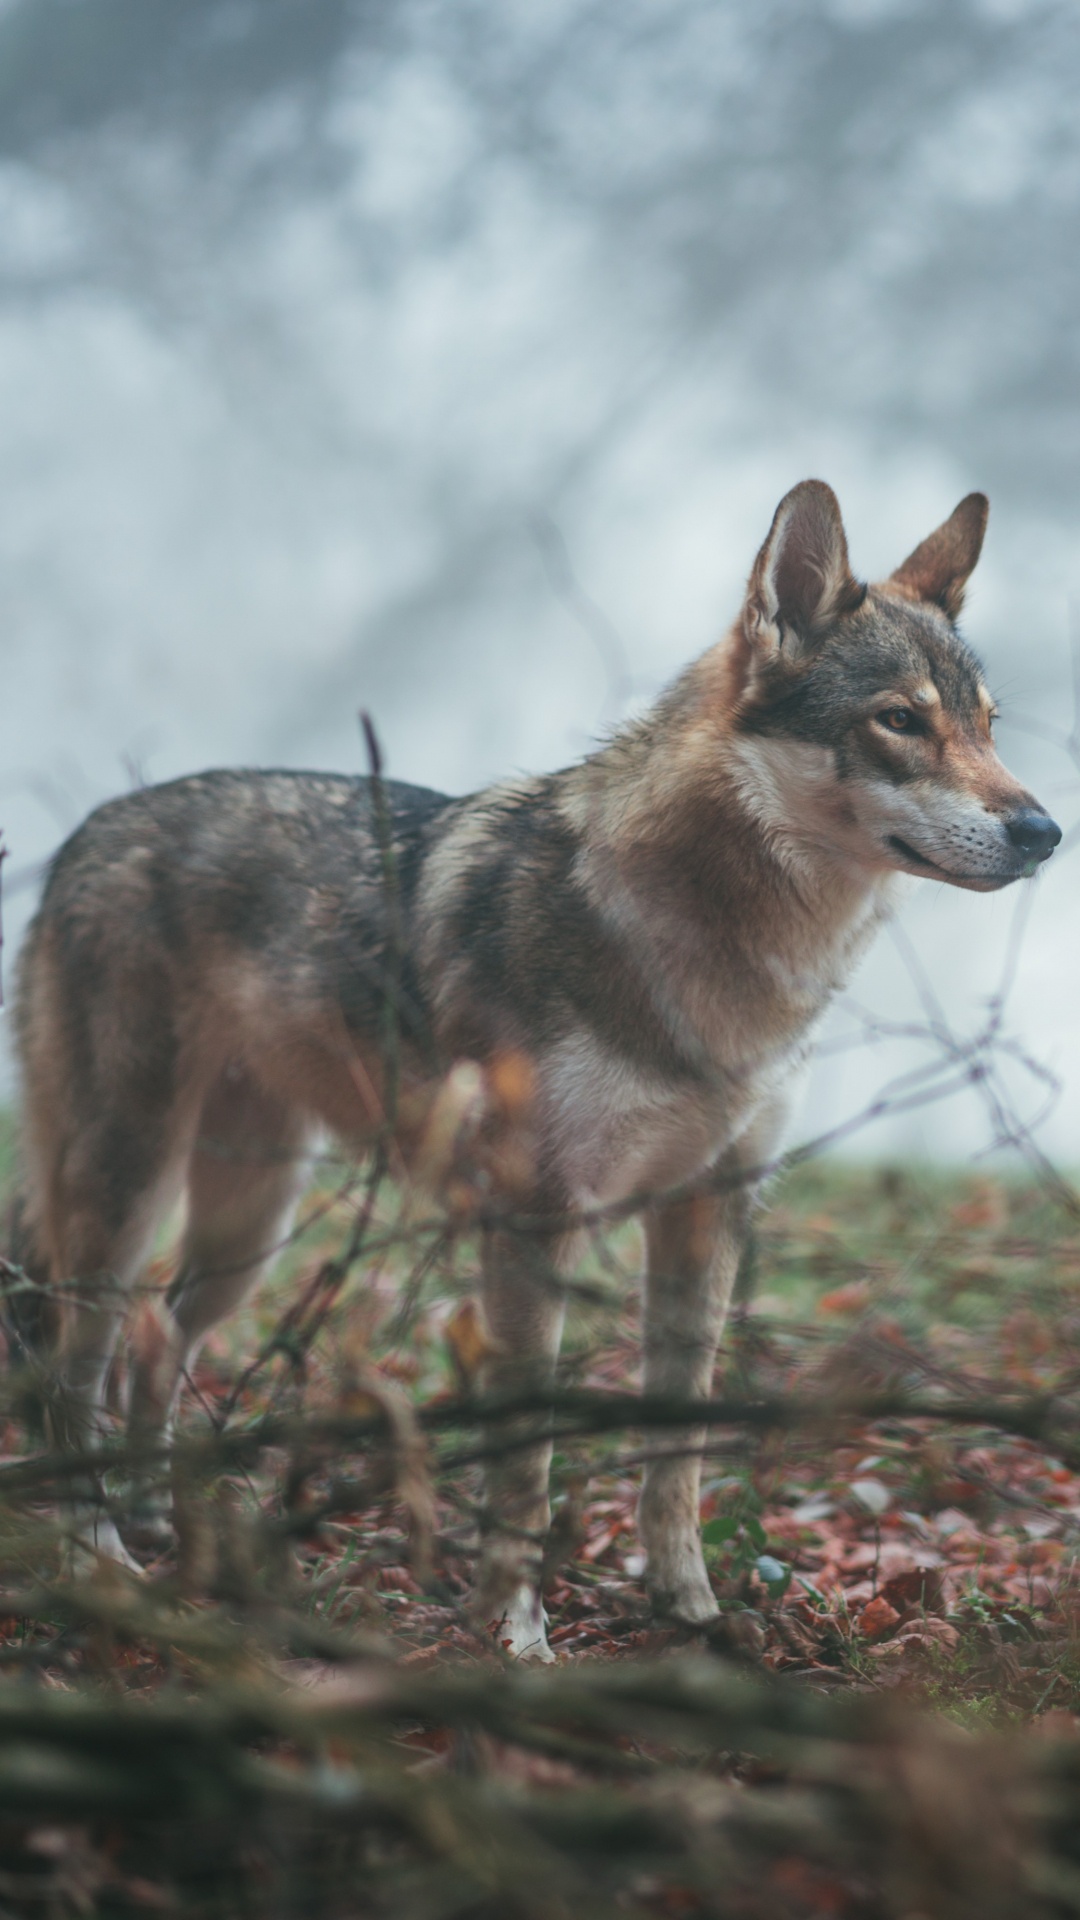 那只狼狗, 野生动物, 狼, 捷克斯洛伐克那只狼狗, 土狼 壁纸 1080x1920 允许